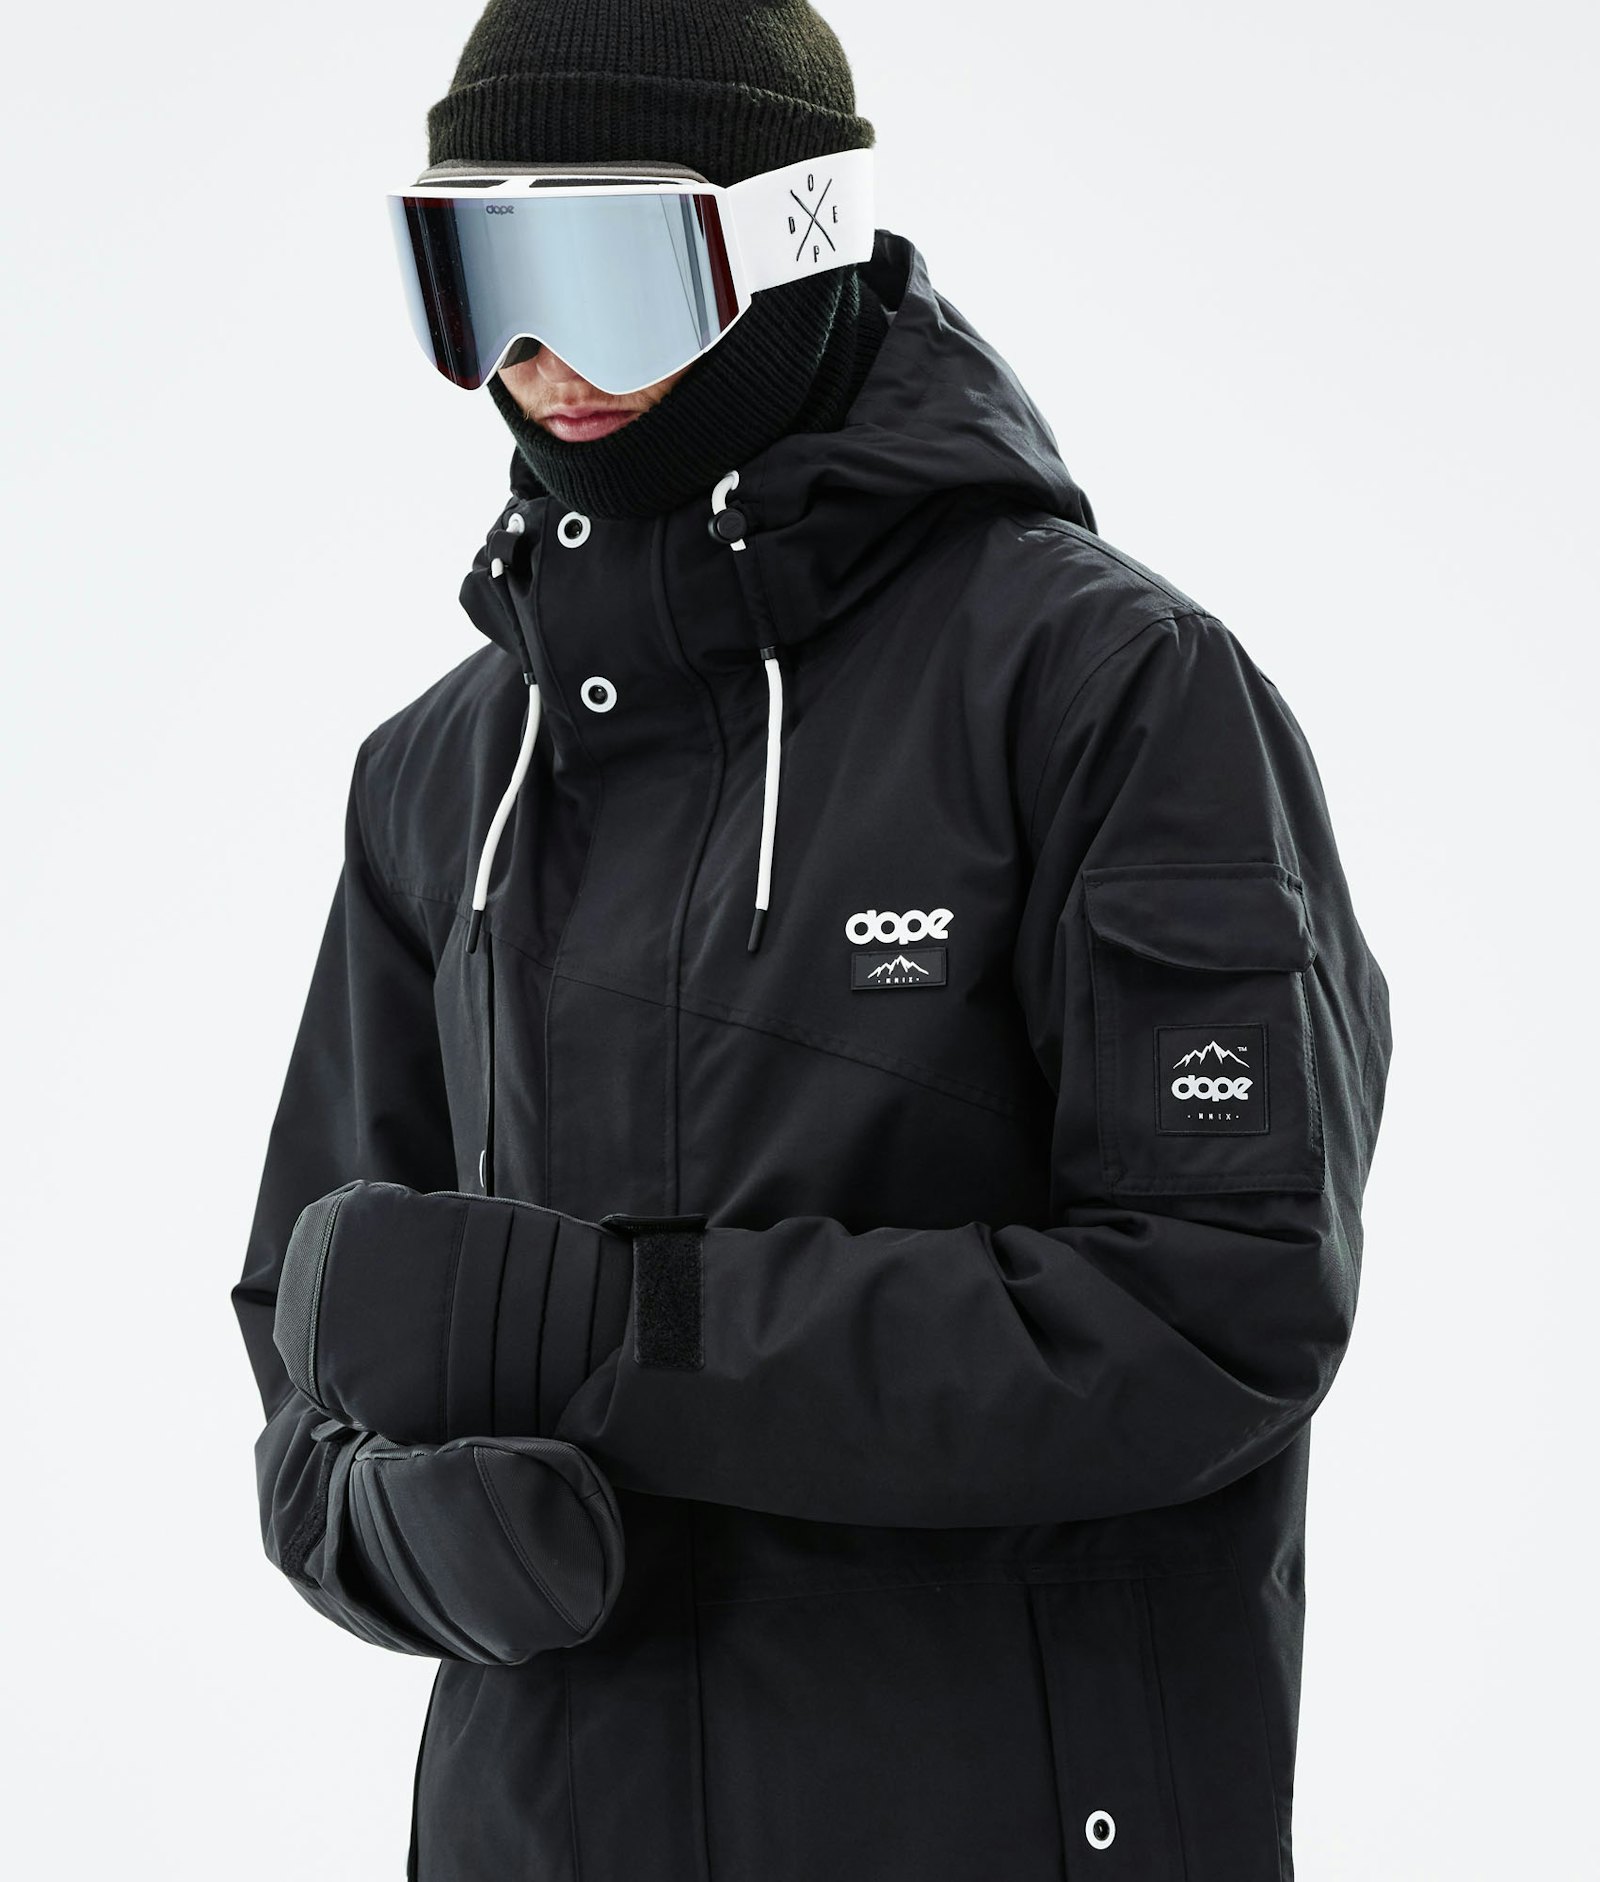 Adept 2019 Veste Snowboard Homme Black